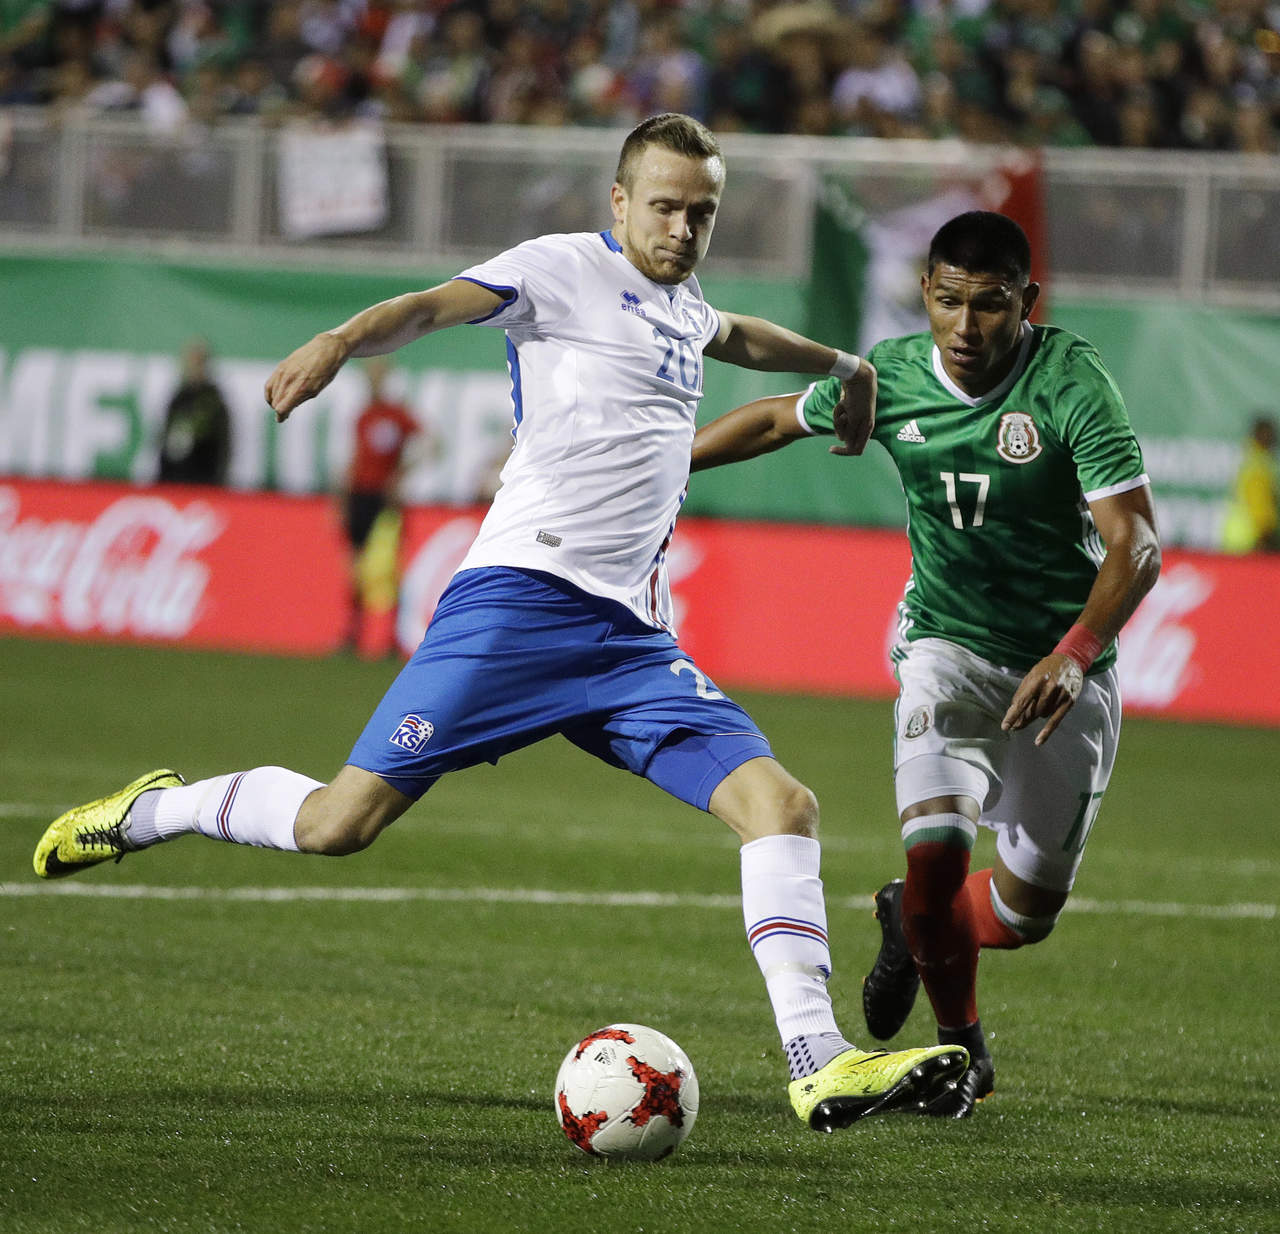 Inofensivo se vio el ataque de la selección de Islandia, ya que no dispararon a portería en todo el encuentro. (AP)